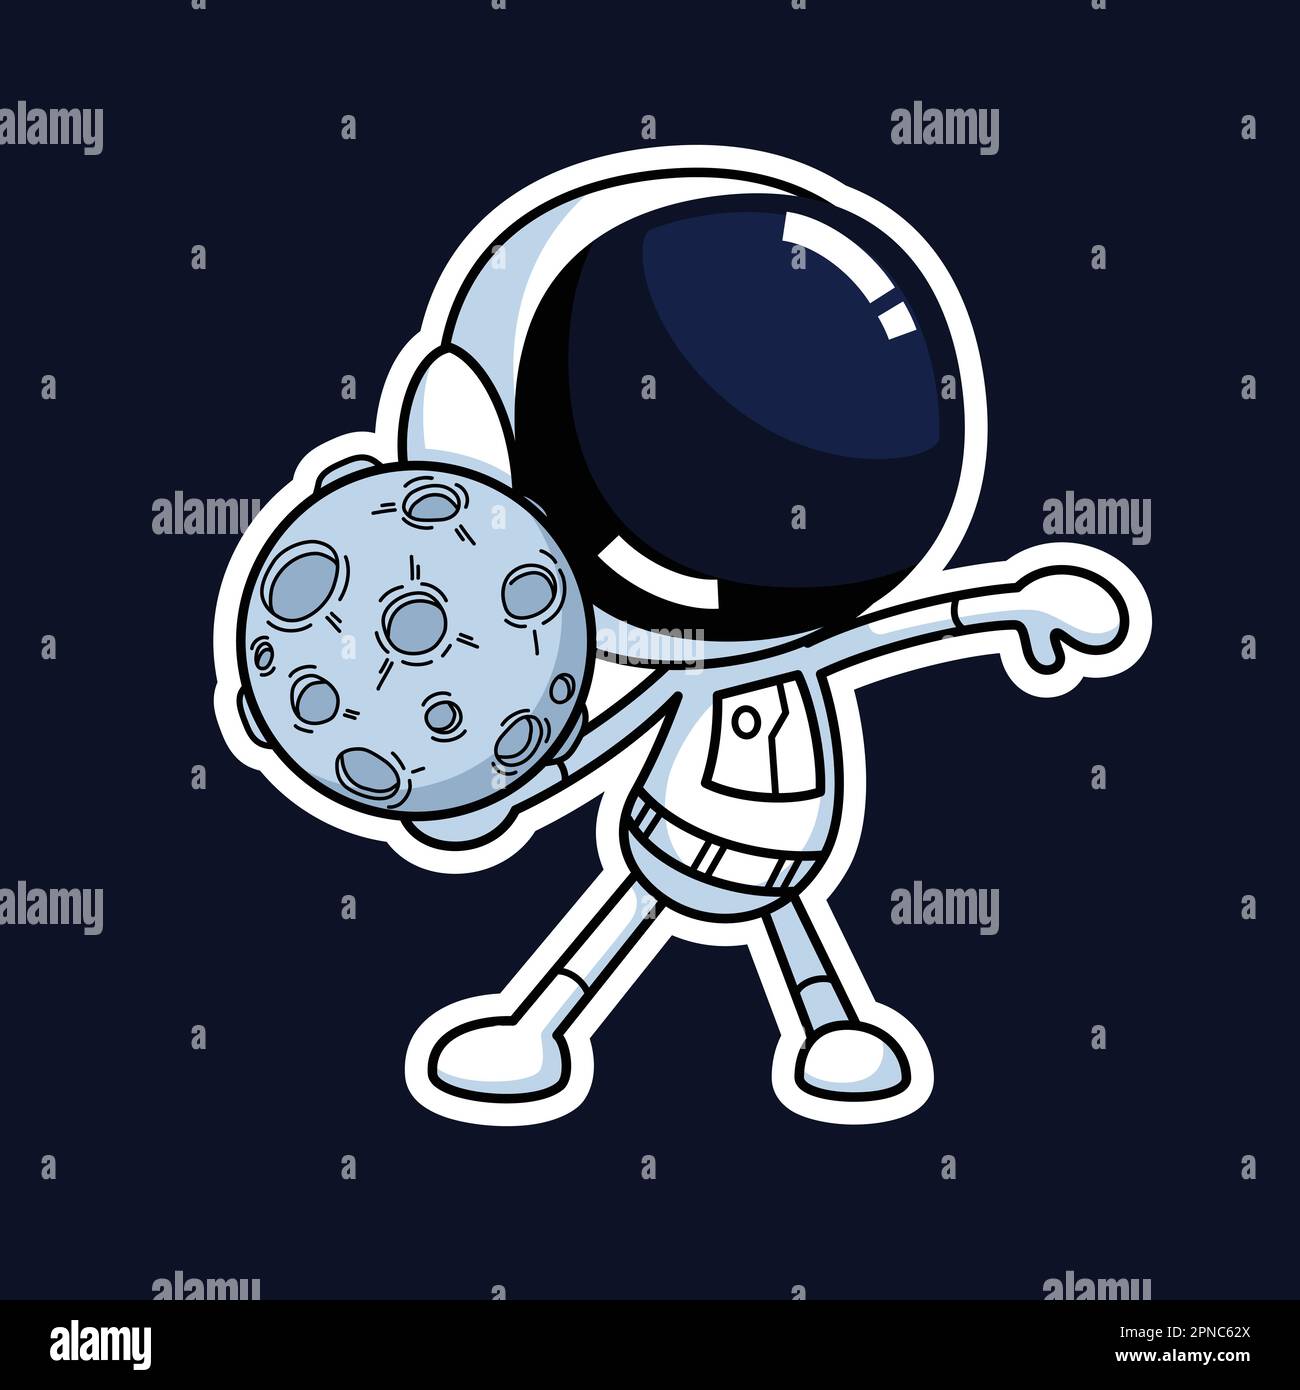 Premium Vector, Cute alien holding moon balloon cartoon illustration